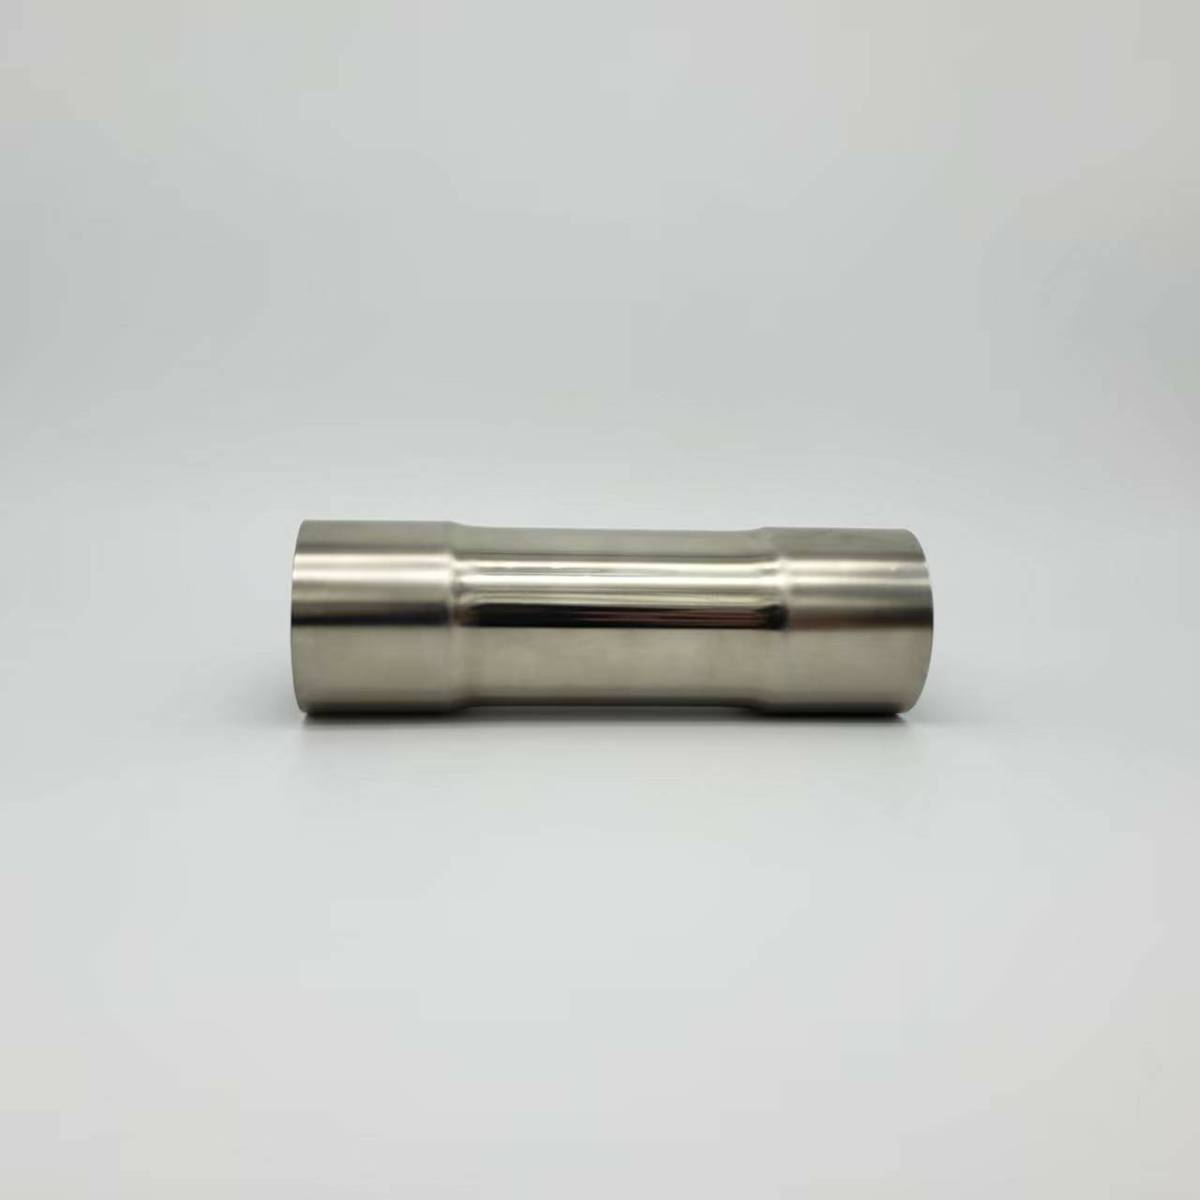  joint труба 38φ общая длина 200mm обе стороны разница включено удлинение нержавеющая сталь новый товар 